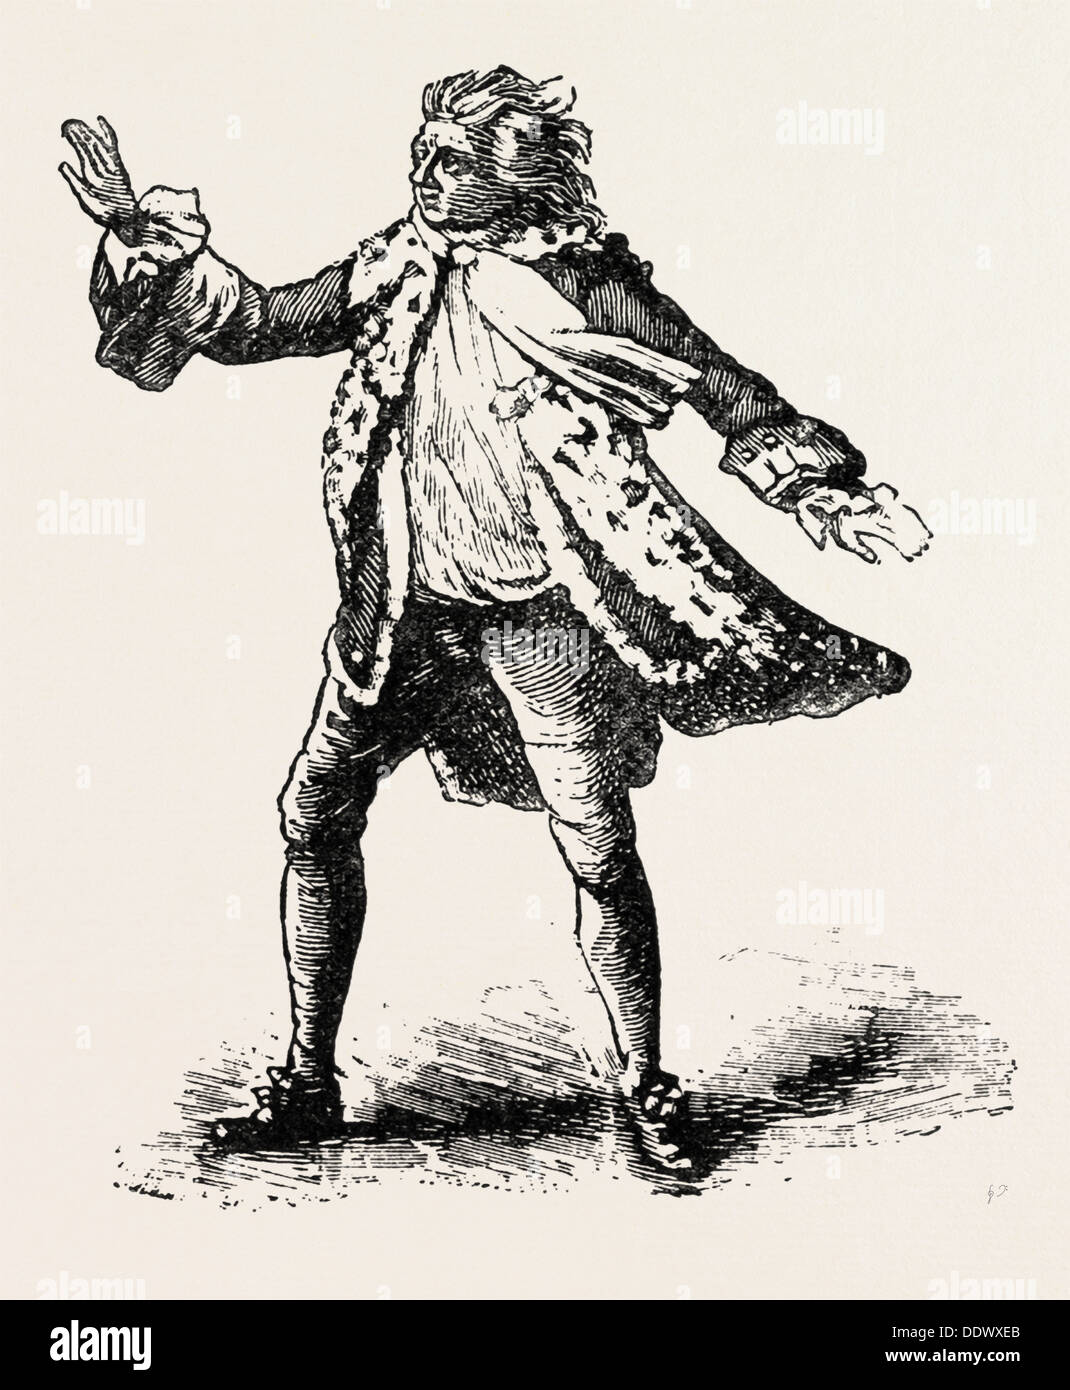 GARRICK als König LEAR, SHAKESPEARE, englischer Dichter und Dramatiker, 1564-1616, UK, 1893-Gravur Stockfoto